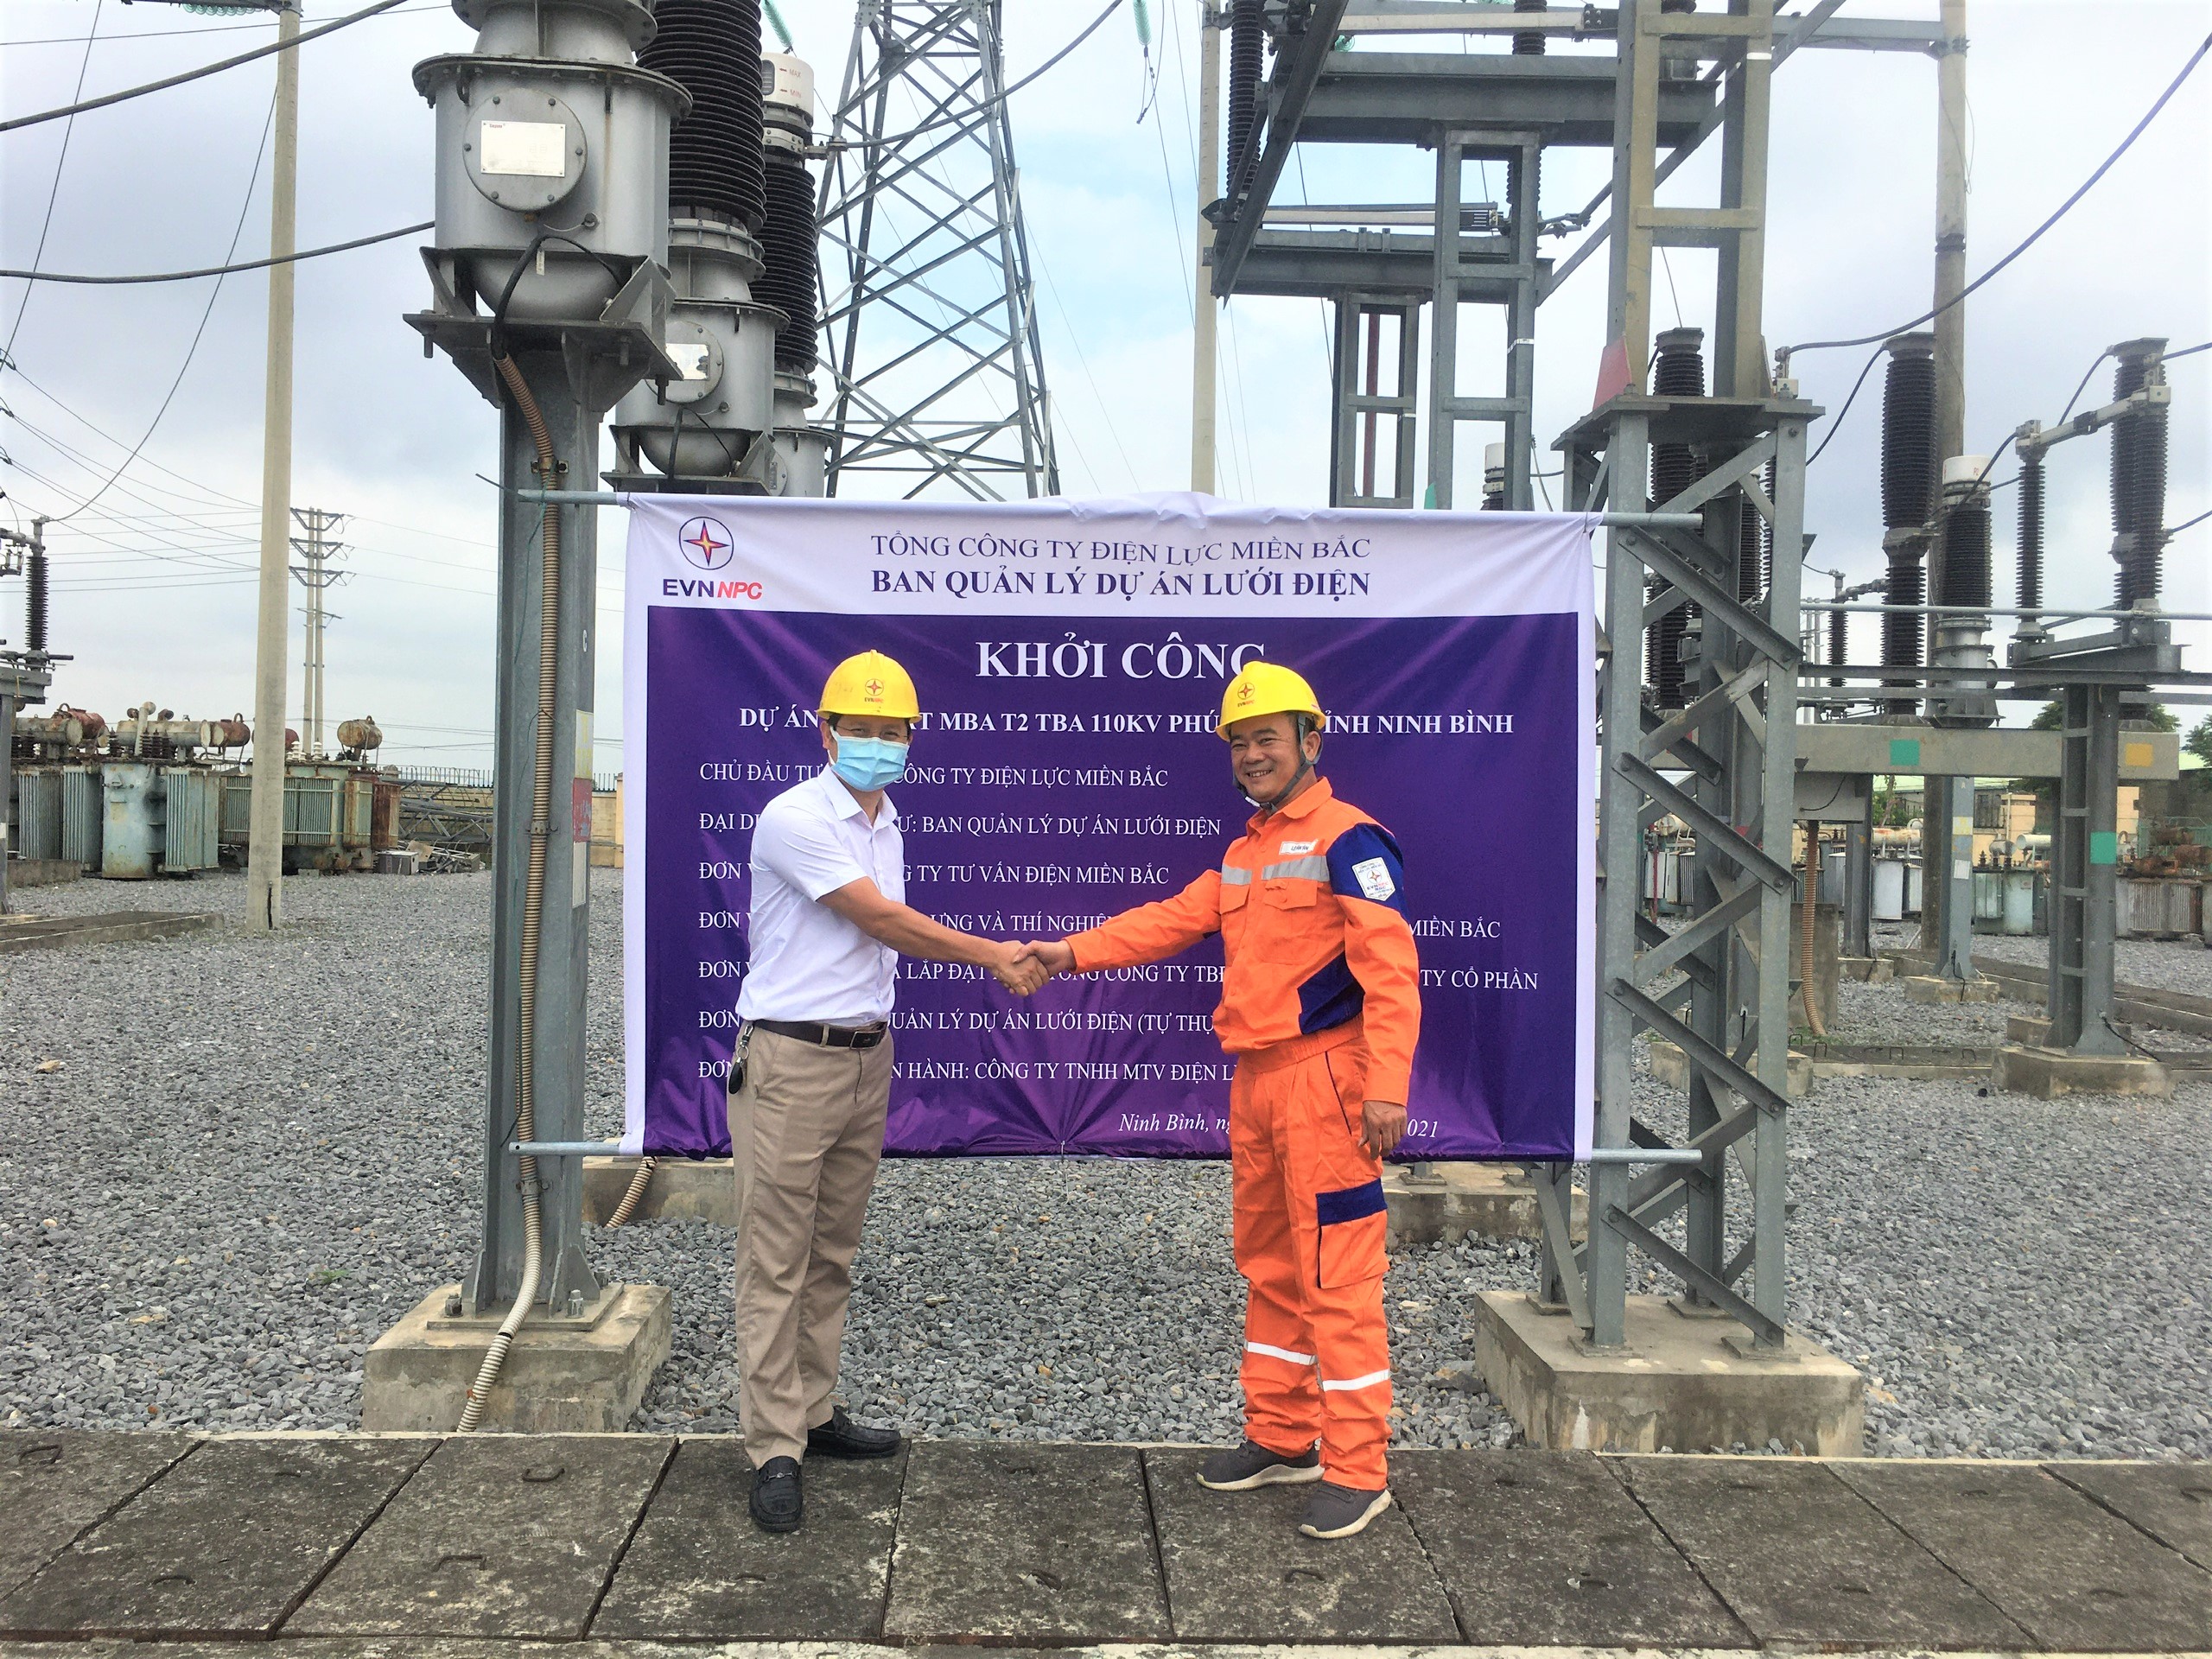 Dự án Lắp đặt MBA T2 TBA 110 kV Phúc Sơn, tỉnh Ninh Bình